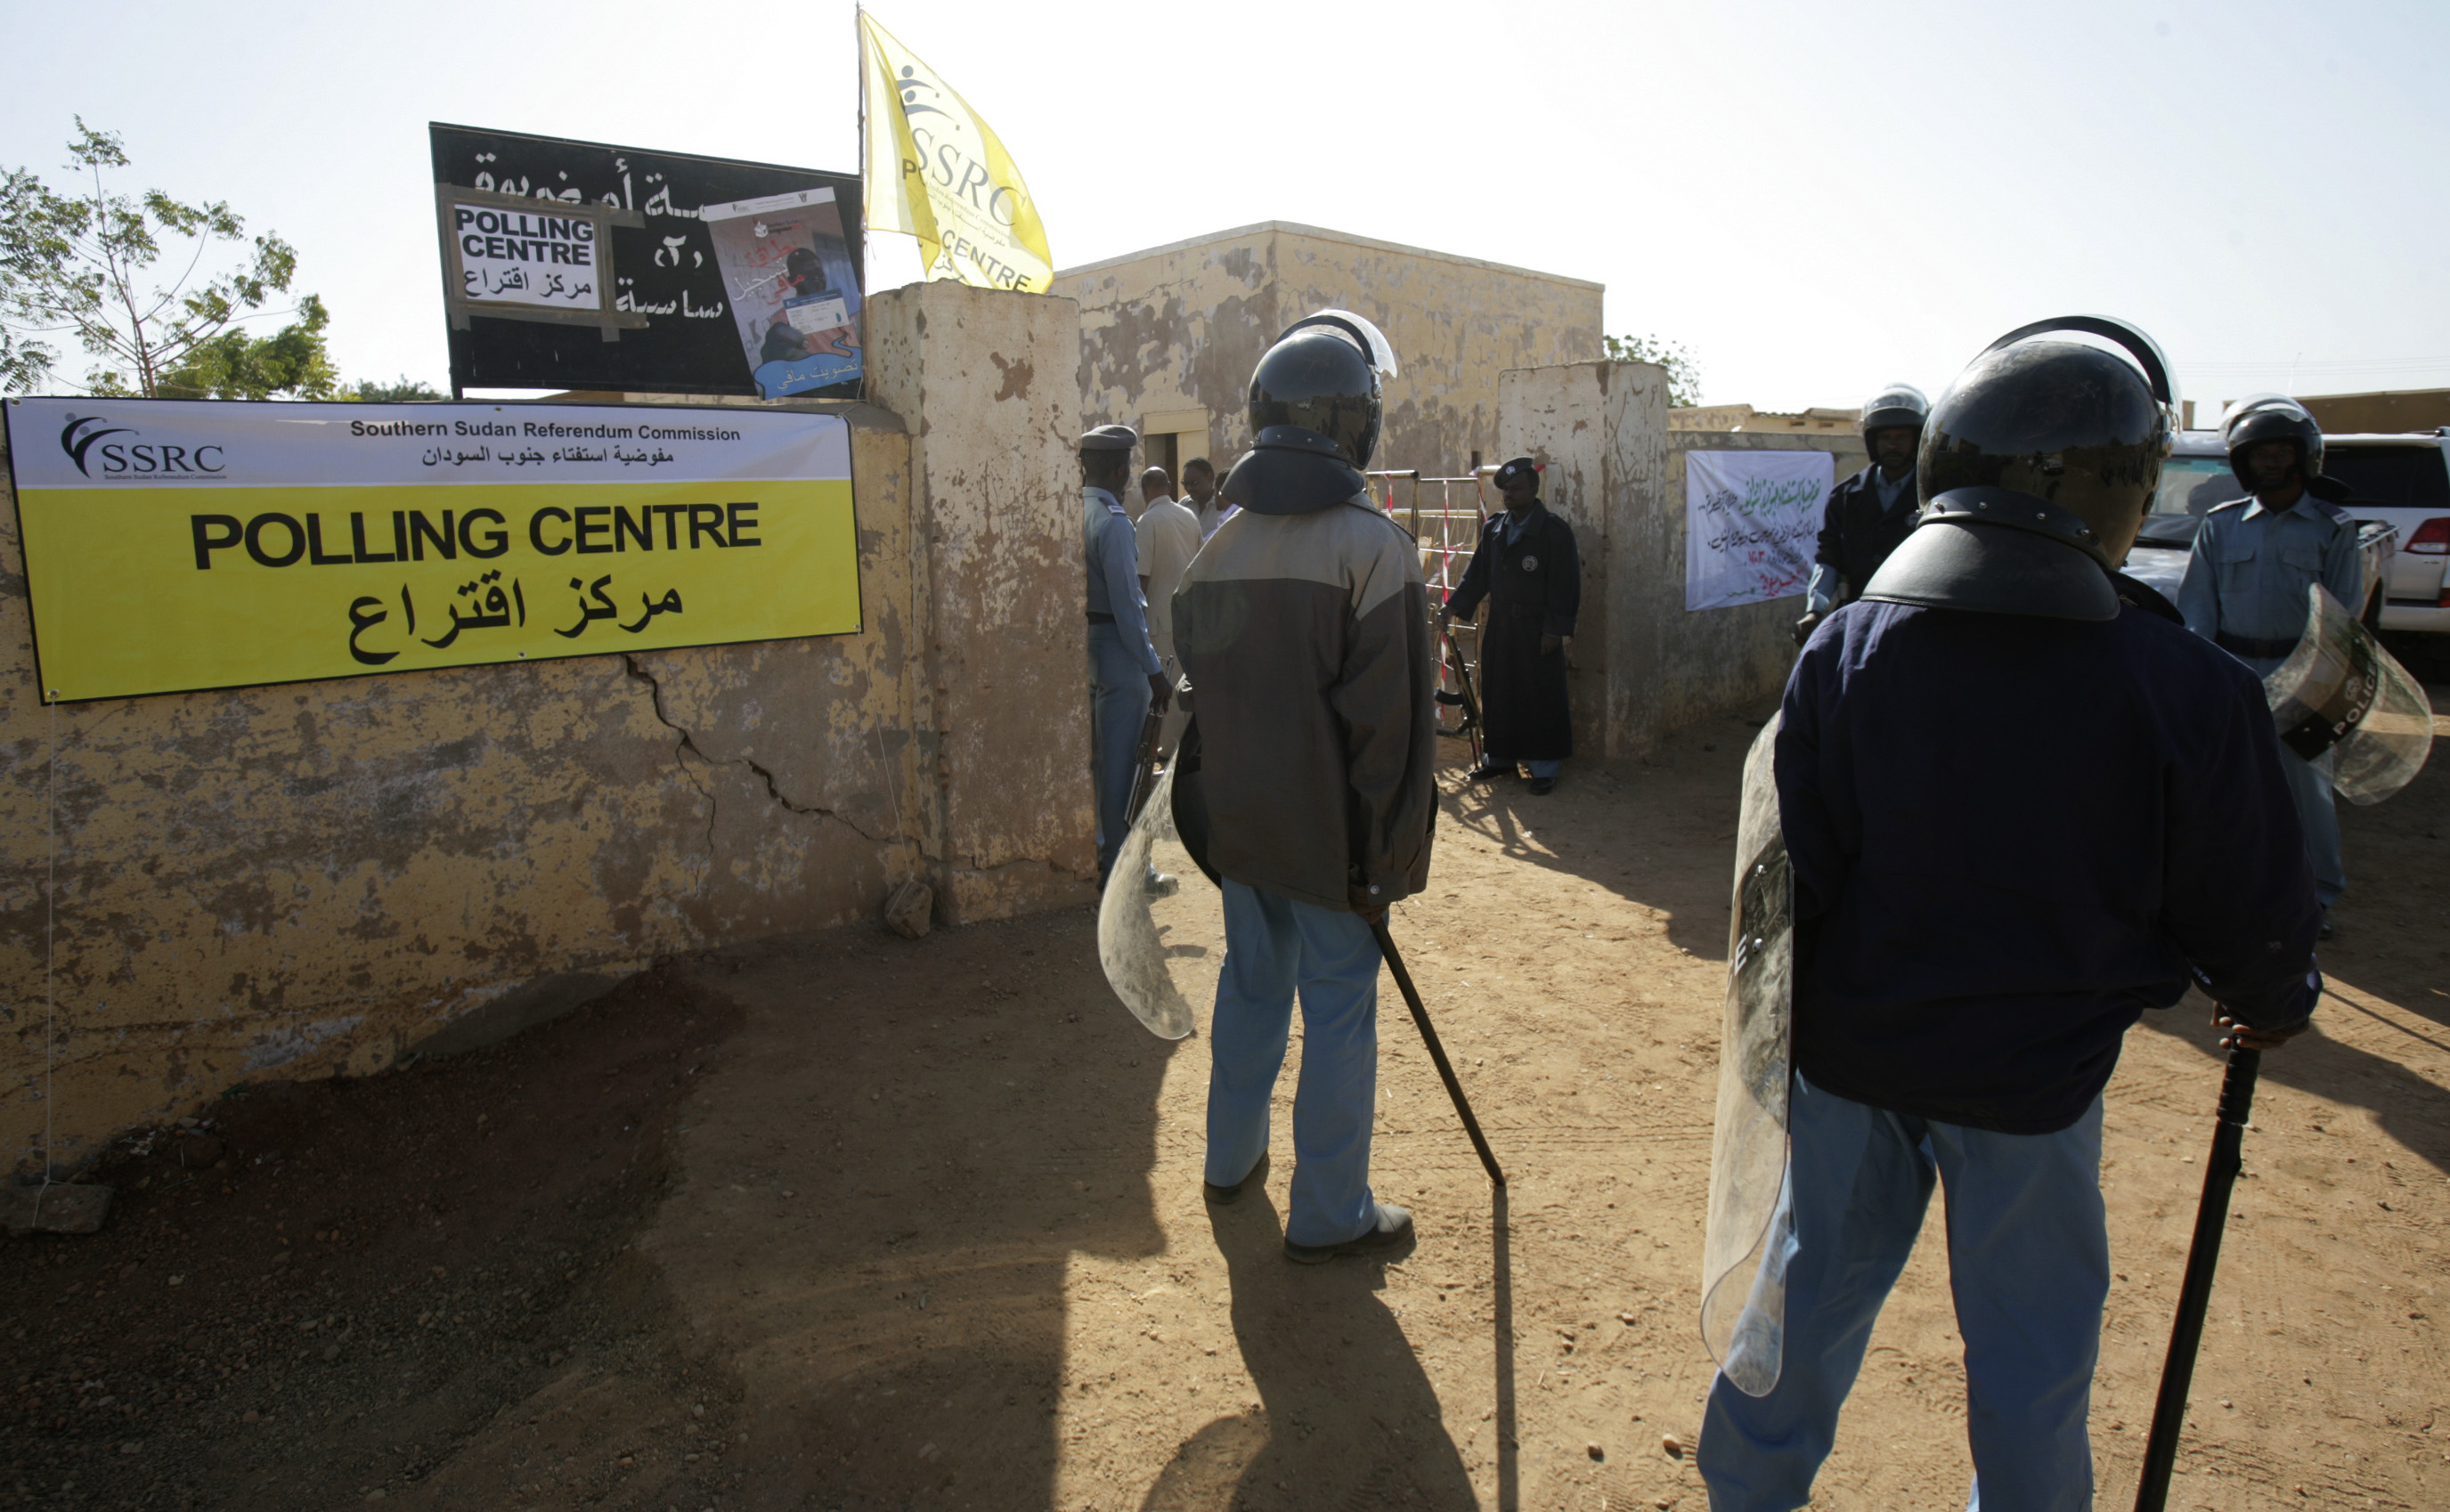 Folkomröstning, Sudan, Darfur